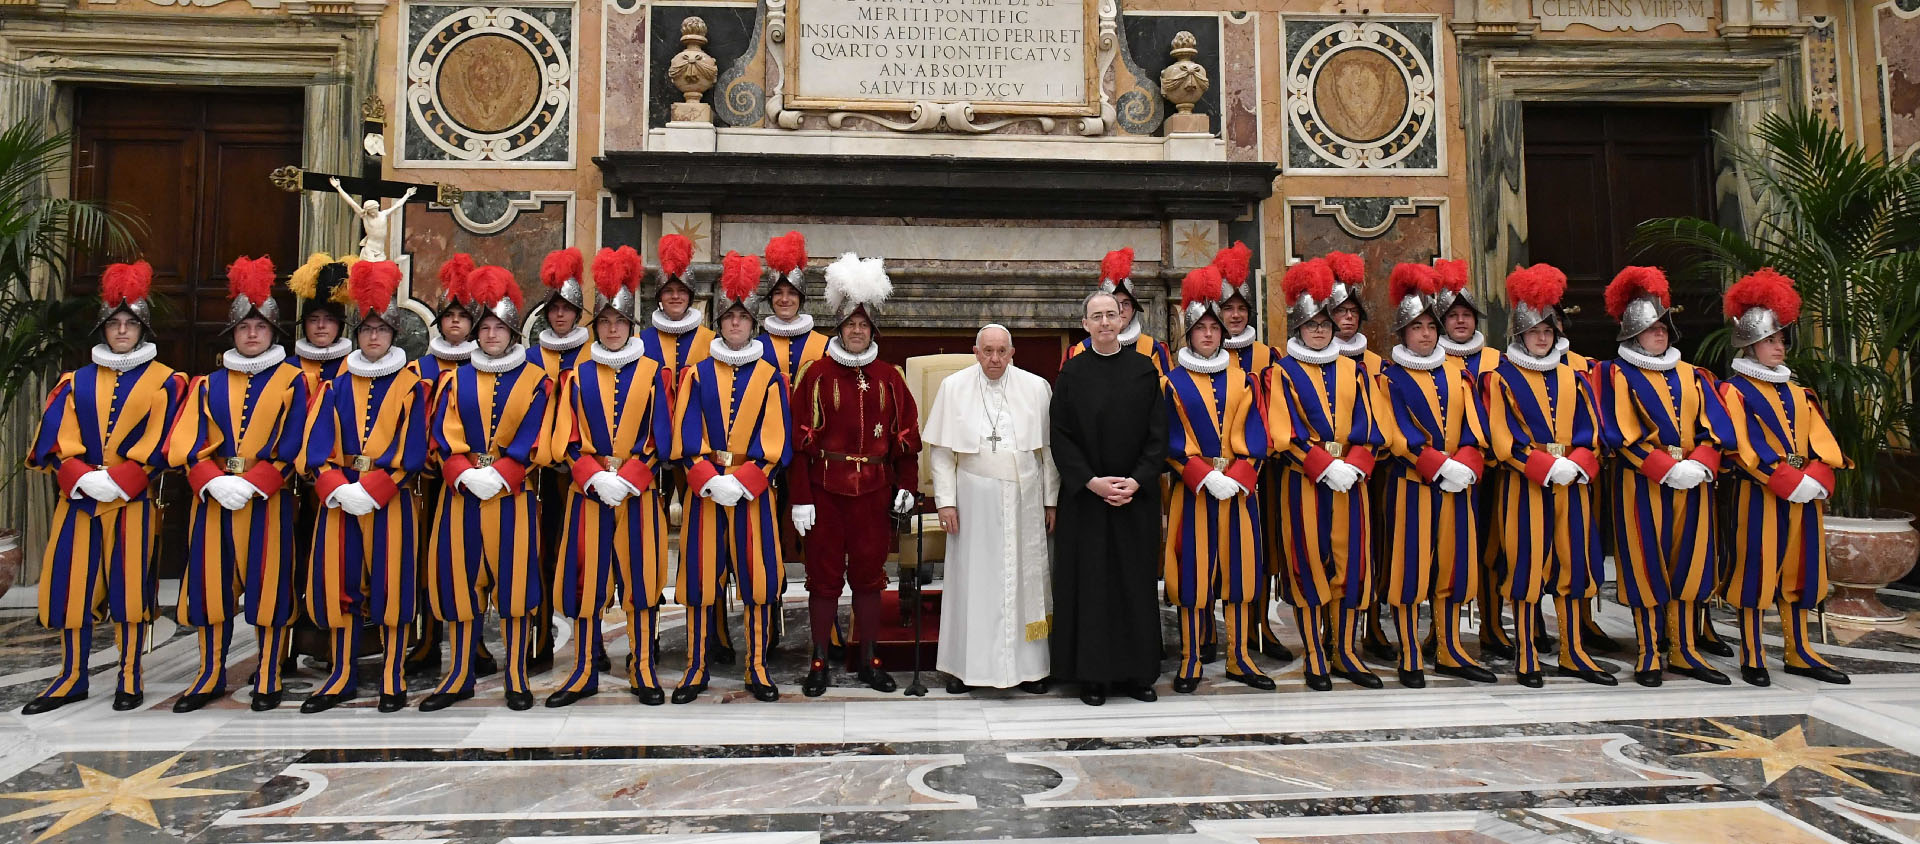 La Garde est «un environnement de formation humaine et chrétienne pour tous», a assuré le pape | © Vatican News